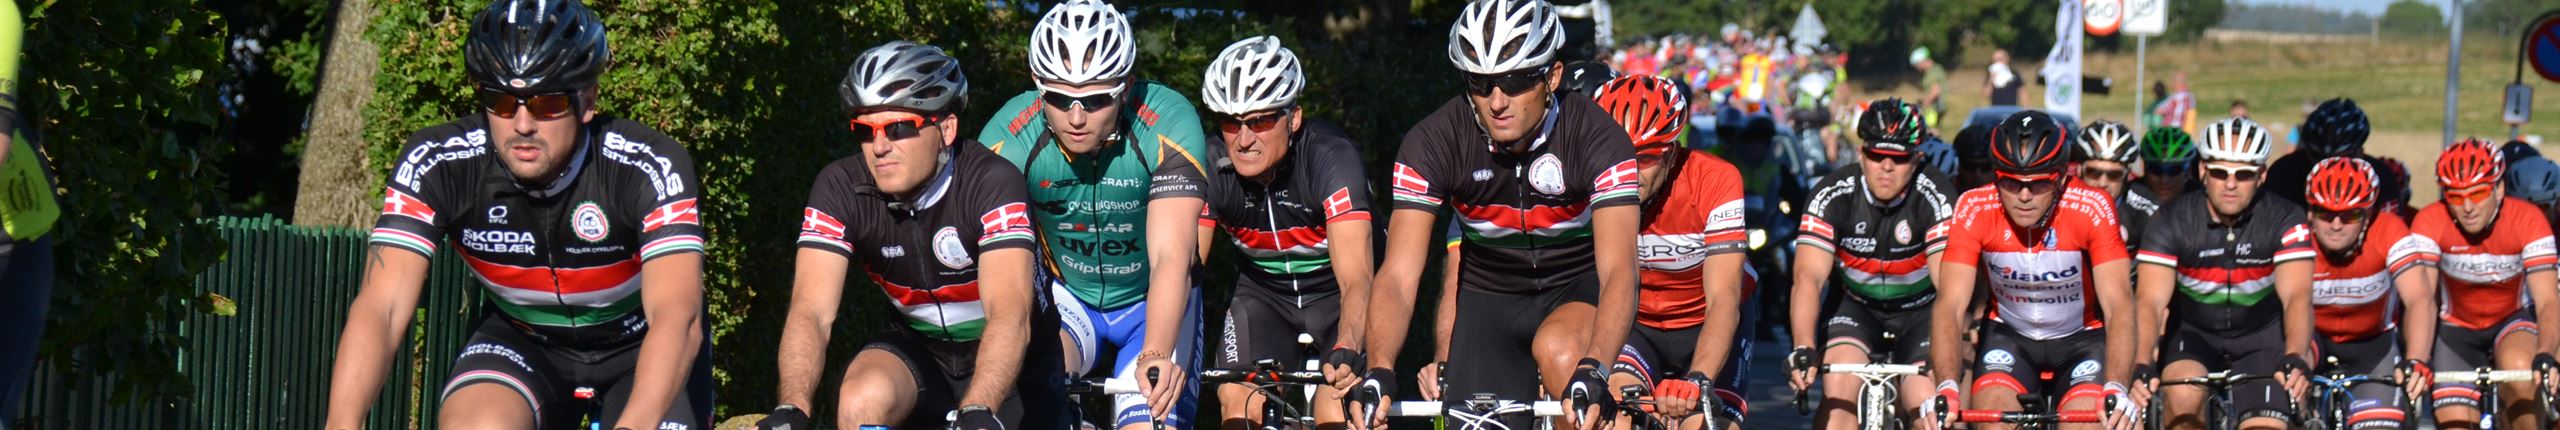 DGI Skoda Cup_mænd_Cykling 4